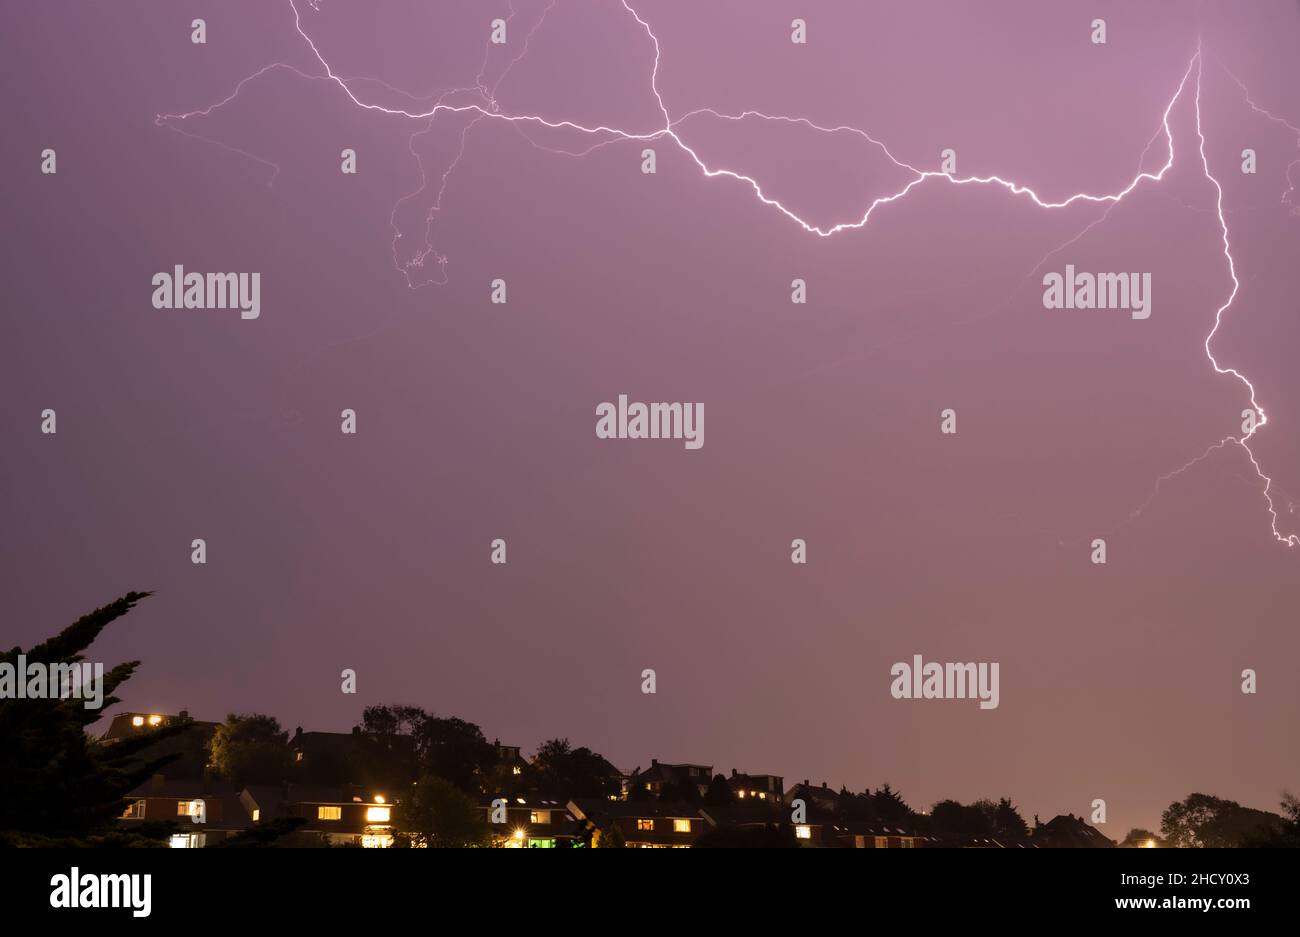 fork lightning in sky over city Stock Photo